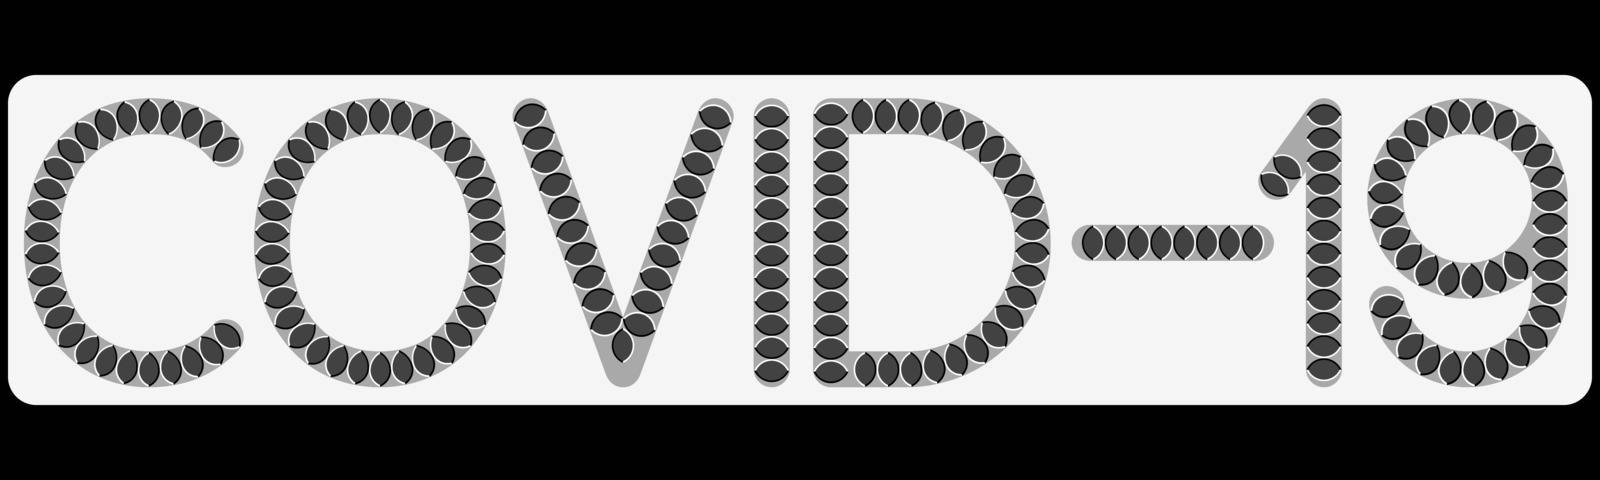 COVID-19 optical illusion letters